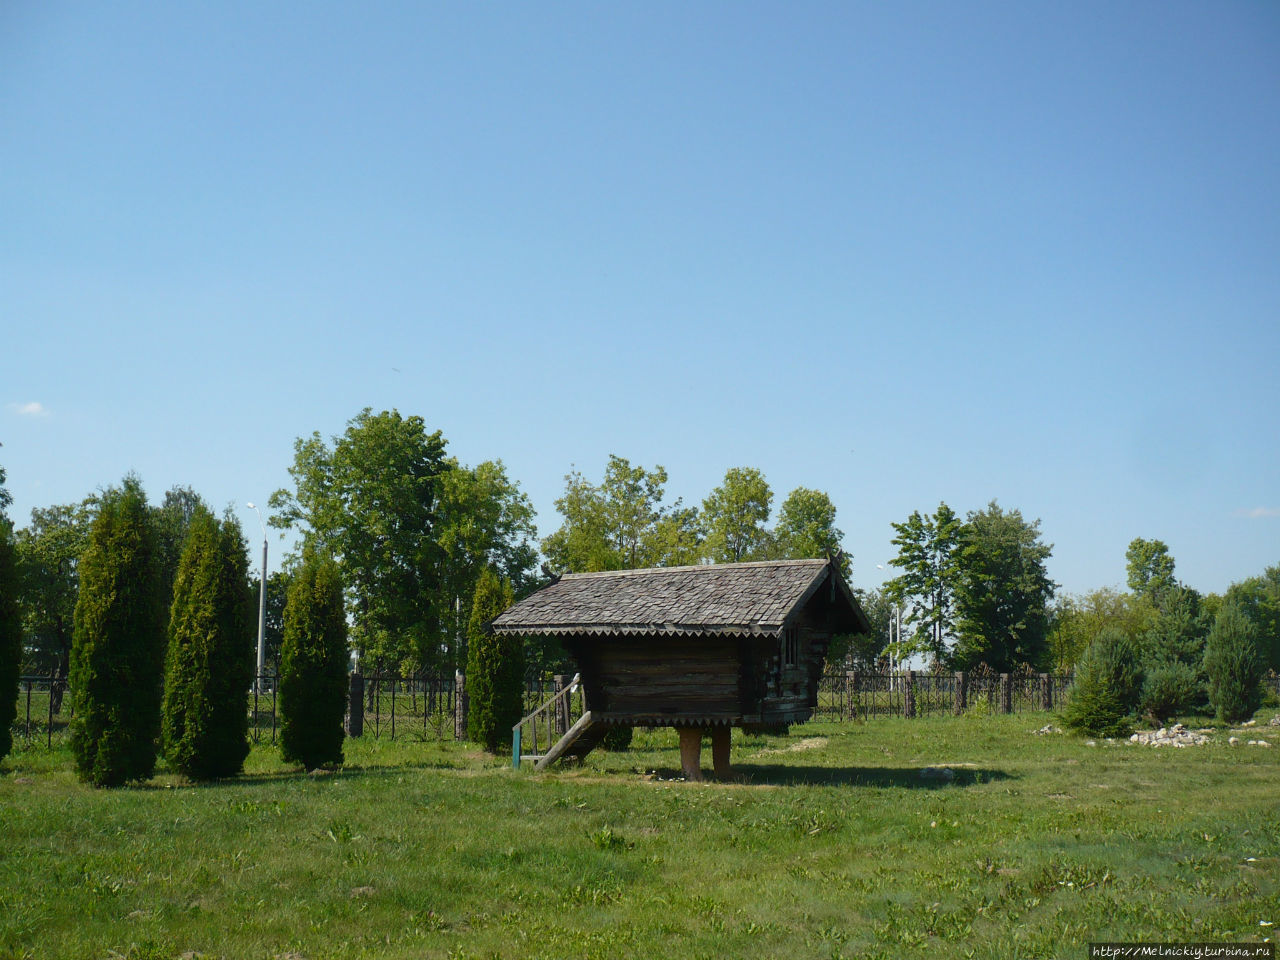 Белорусская этнографическая деревня XIX века Могилев, Беларусь